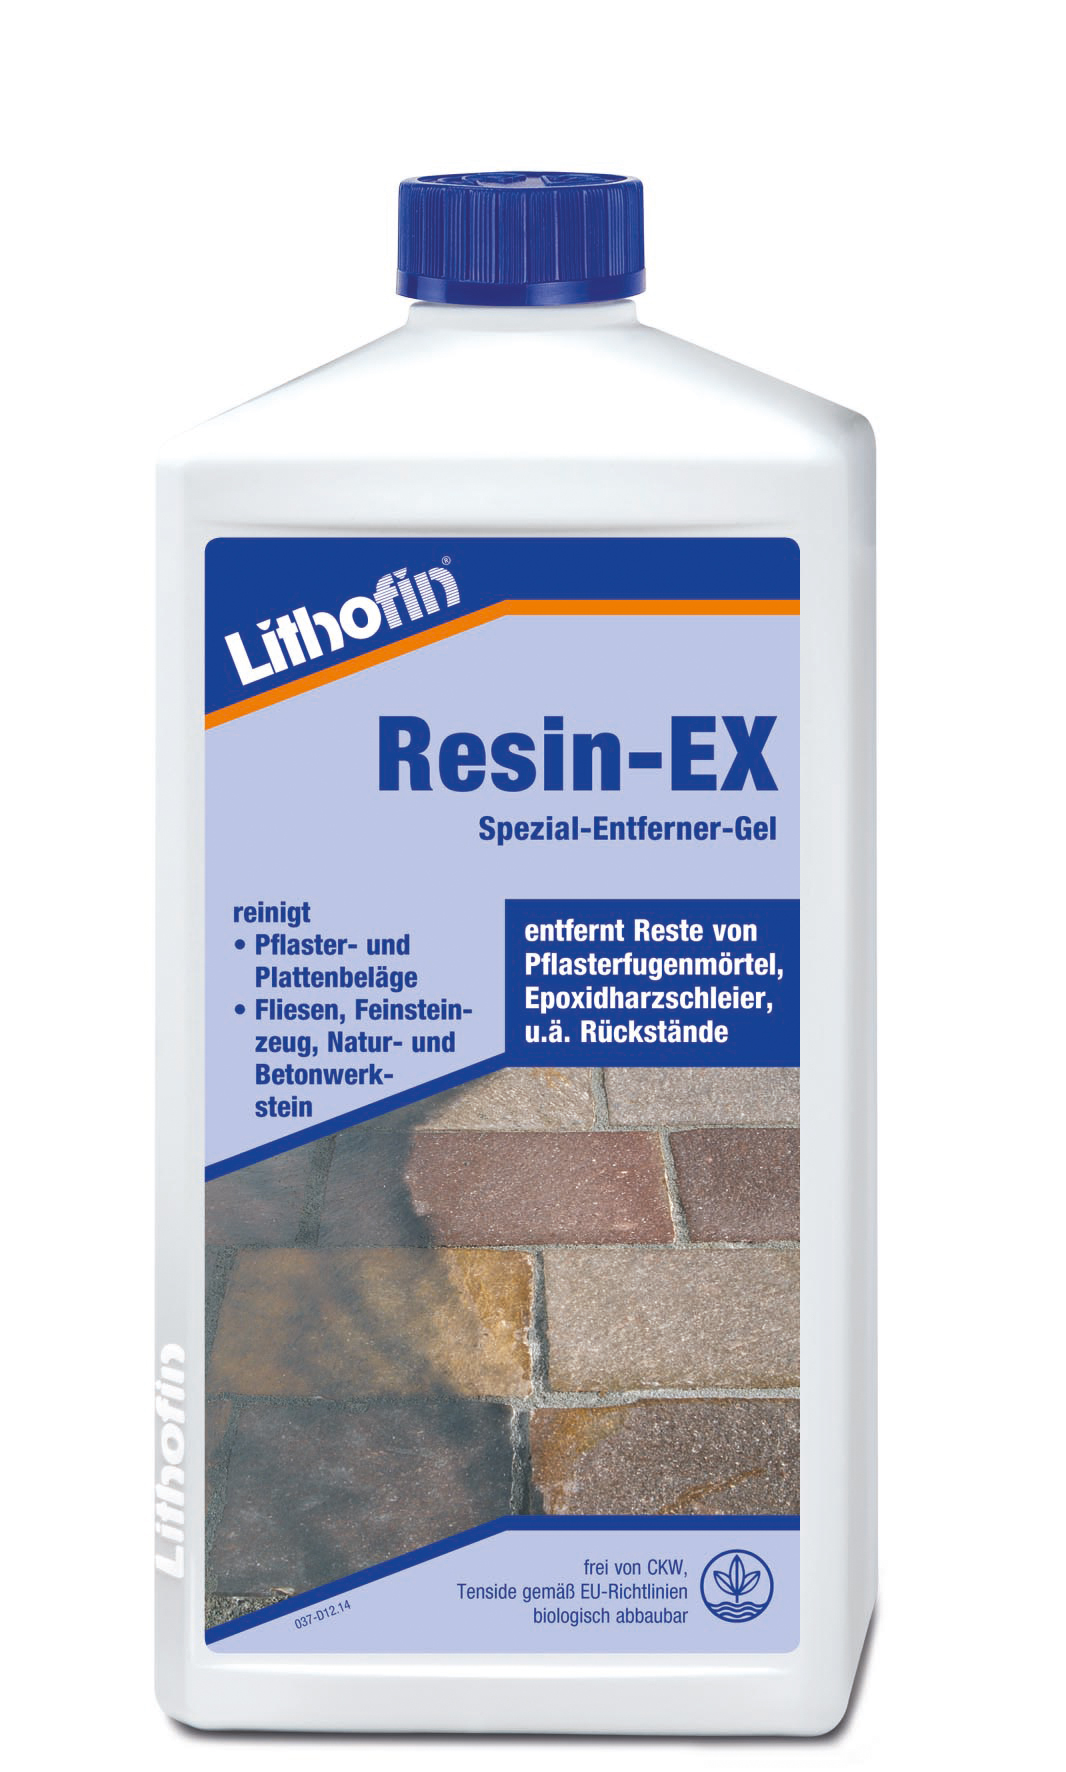 Lithofin Resin-EX 1 kg